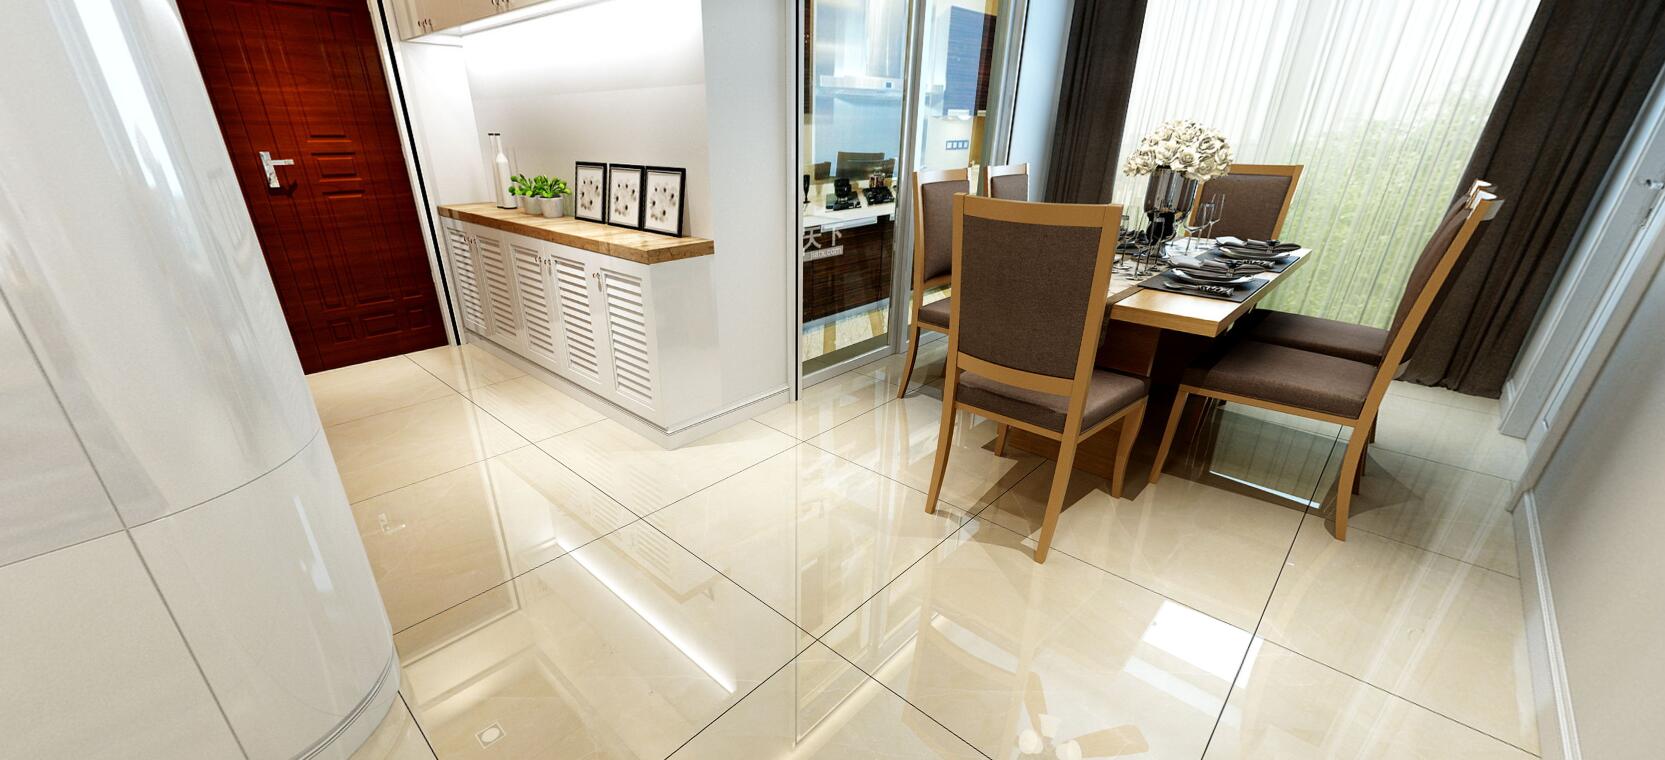 大理石瓷砖维纳斯黄IPGS90044餐厅空间效果图1